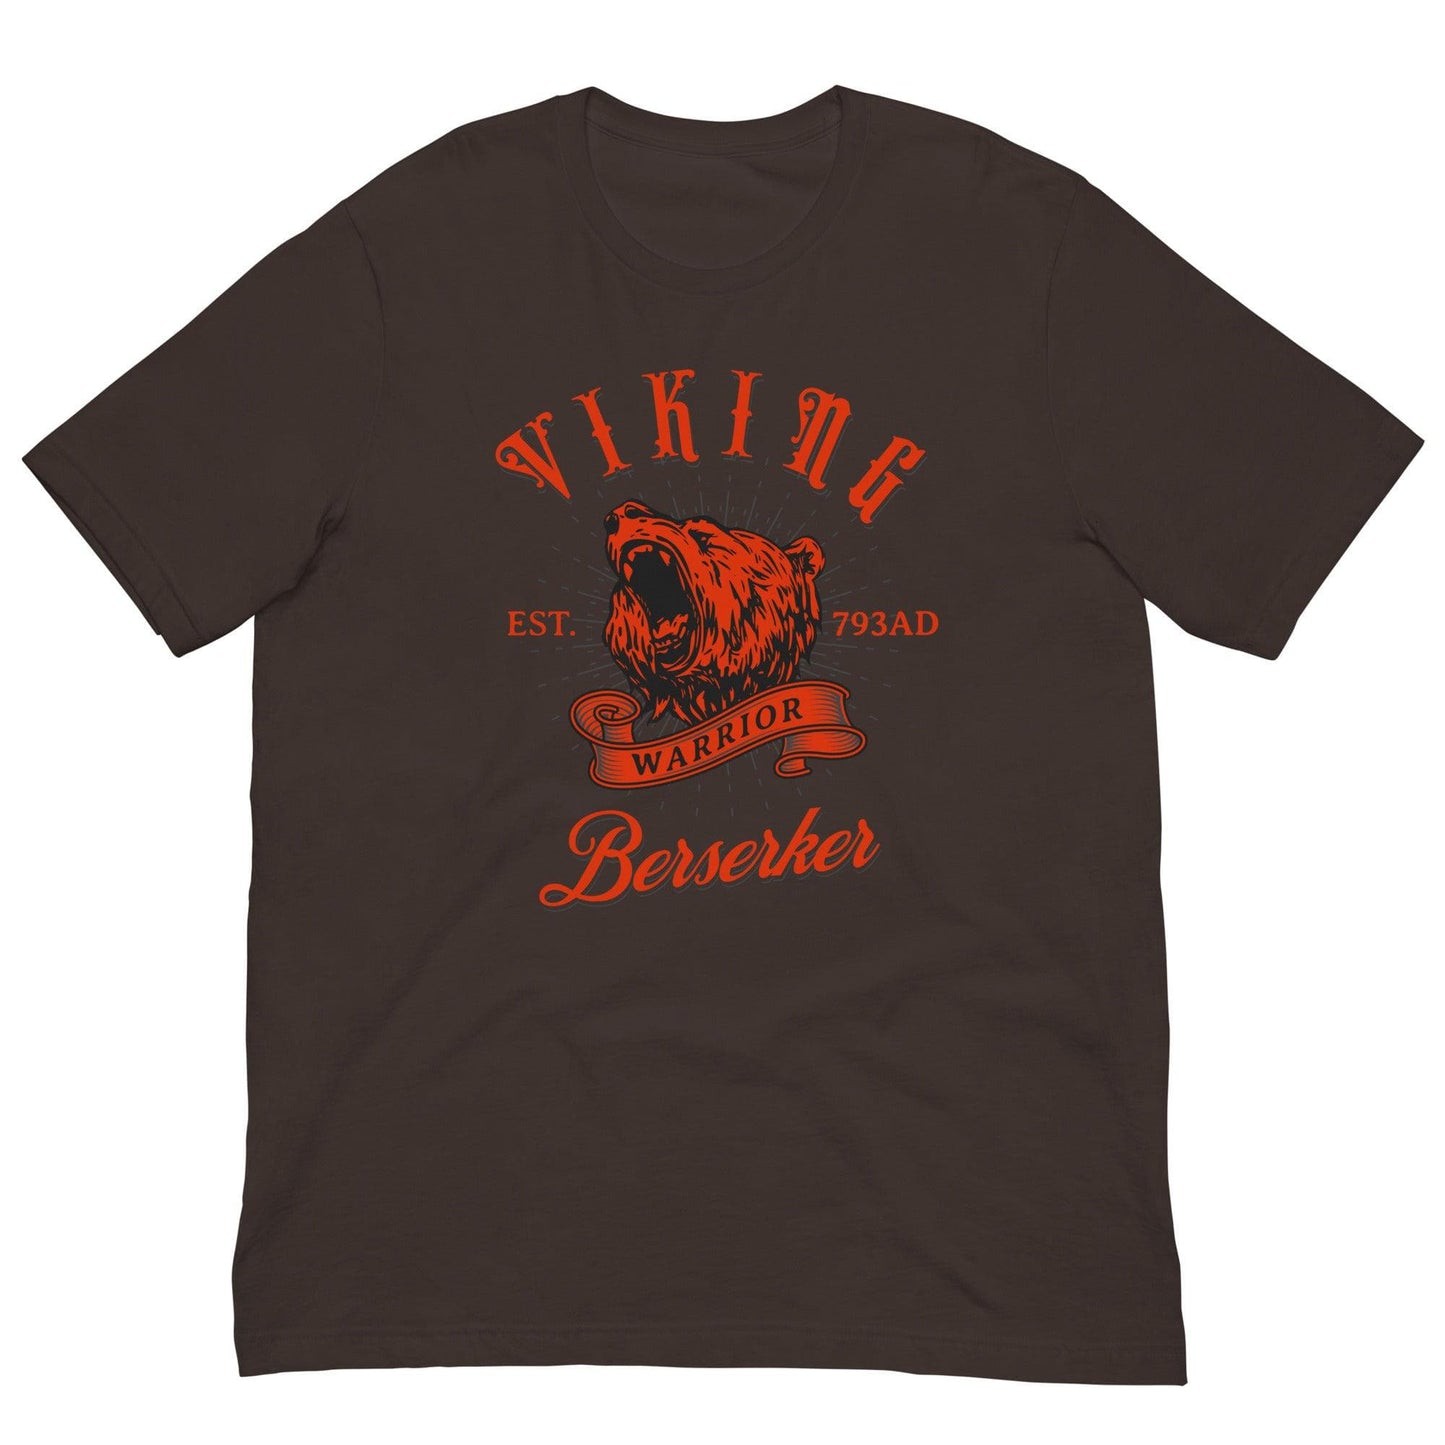 Berserker Warrior T-shirt Brown / S